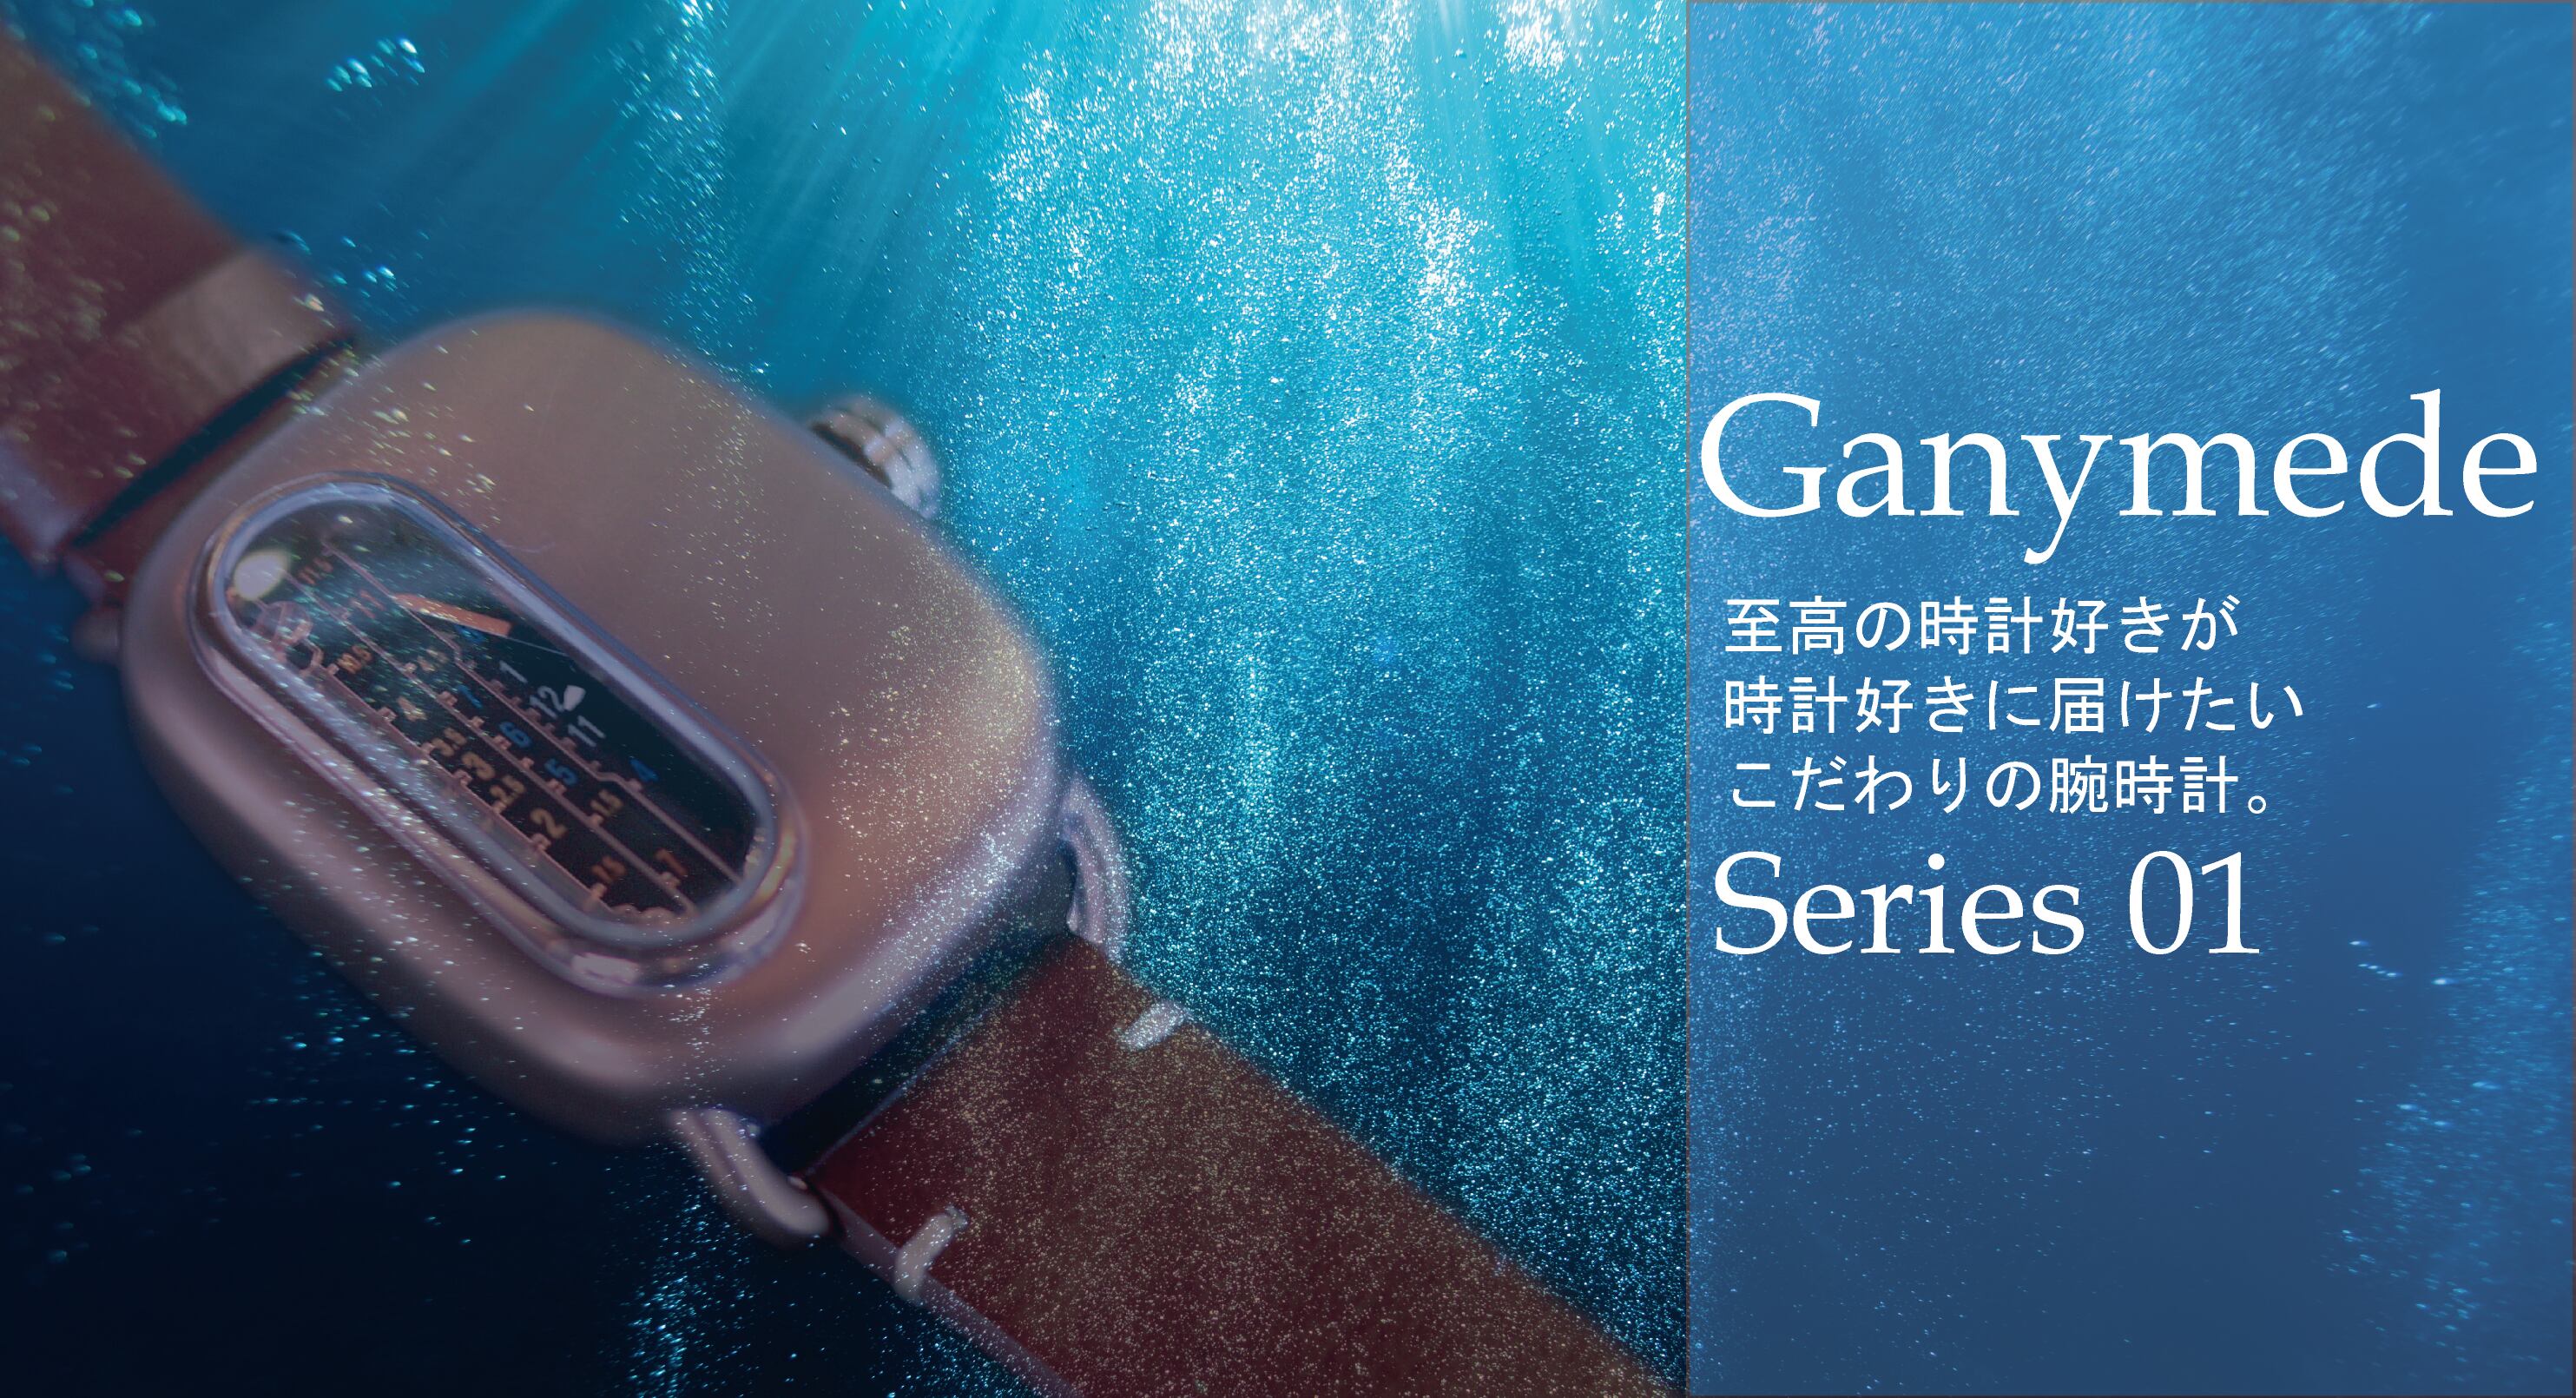 上等 Ganymede series01 ガニメデ 機械式 腕時計 asakusa.sub.jp